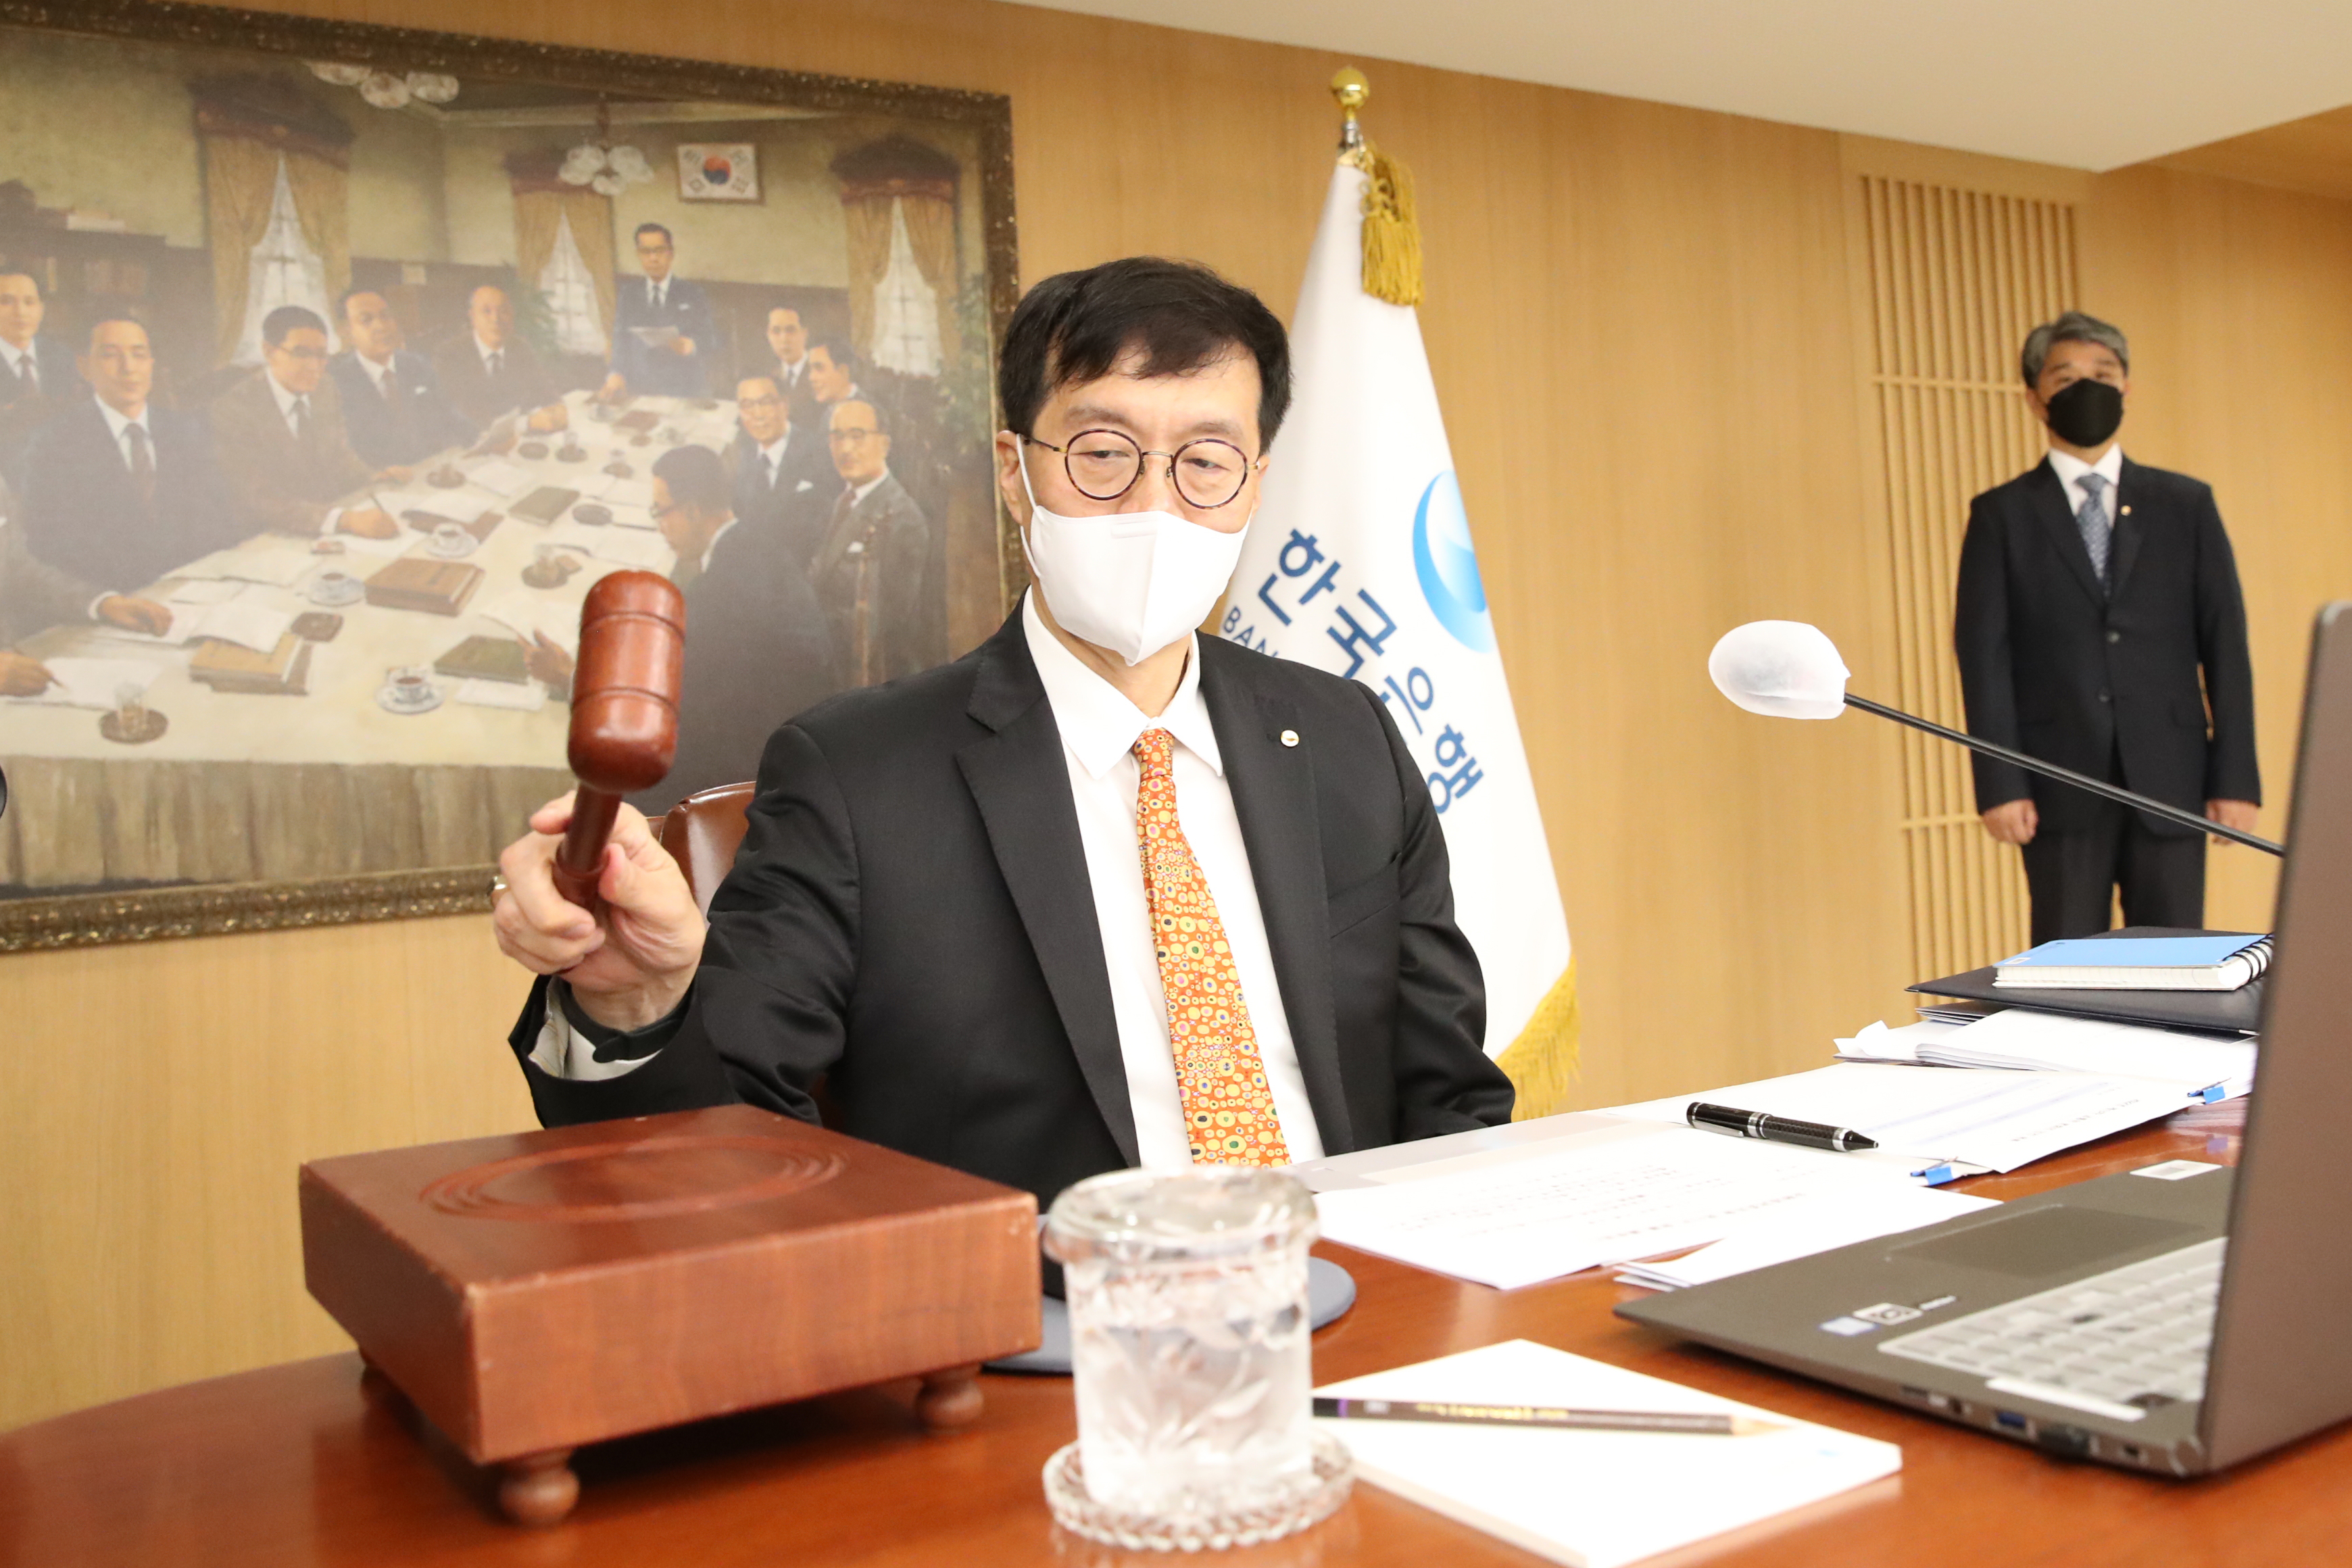 이창용 한국은행 총재가 13일 오전 서울 중구 한국은행에서 열린 금융통화위원회(금통위) 본회의에서 회의를 주재하고 있다. 금통위는 이날 현재 연 1.75%인 기준금리를 연 2.25%로 0.5% 포인트 인상했다. 한국은행 제공.  